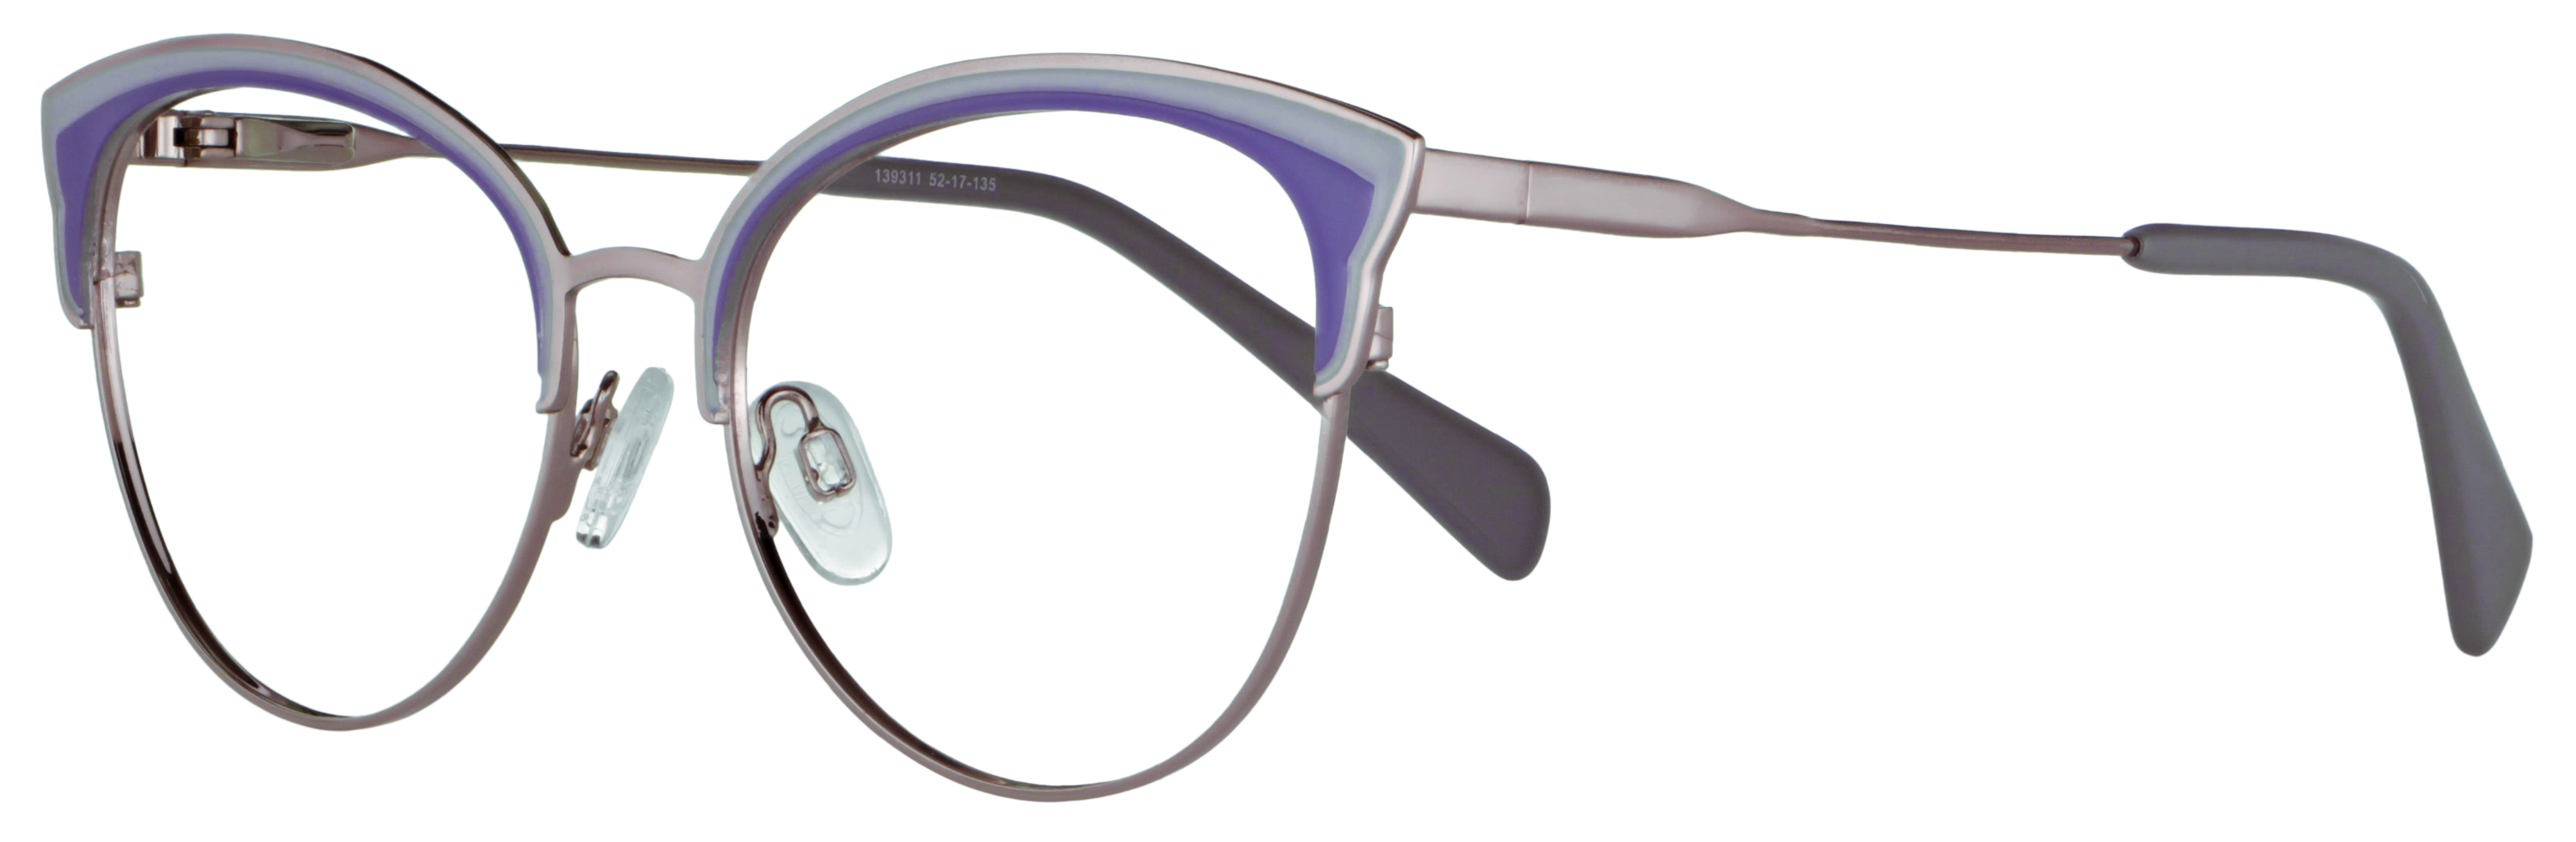 Das Bild zeigt die Korrektionsbrille 139311 von Abele Optik in silber, lila und grau